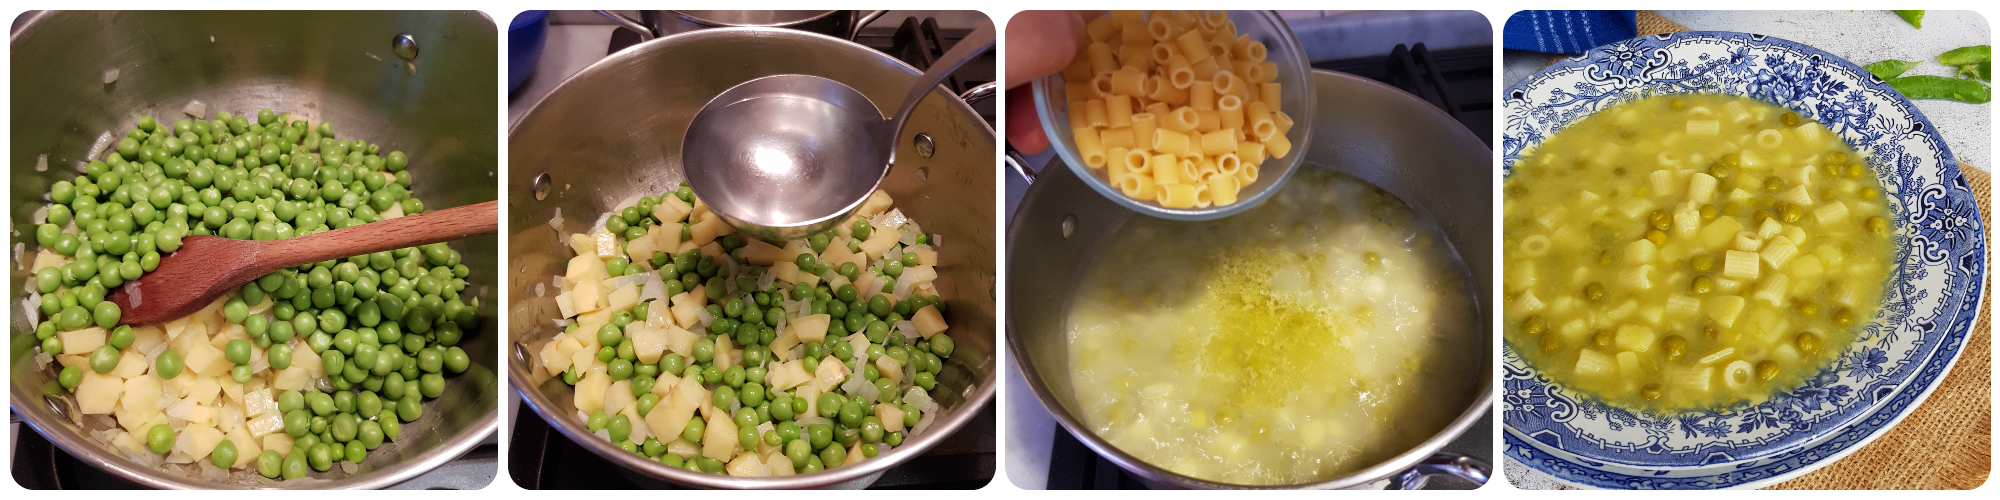 minestra di pasta piselli e patate